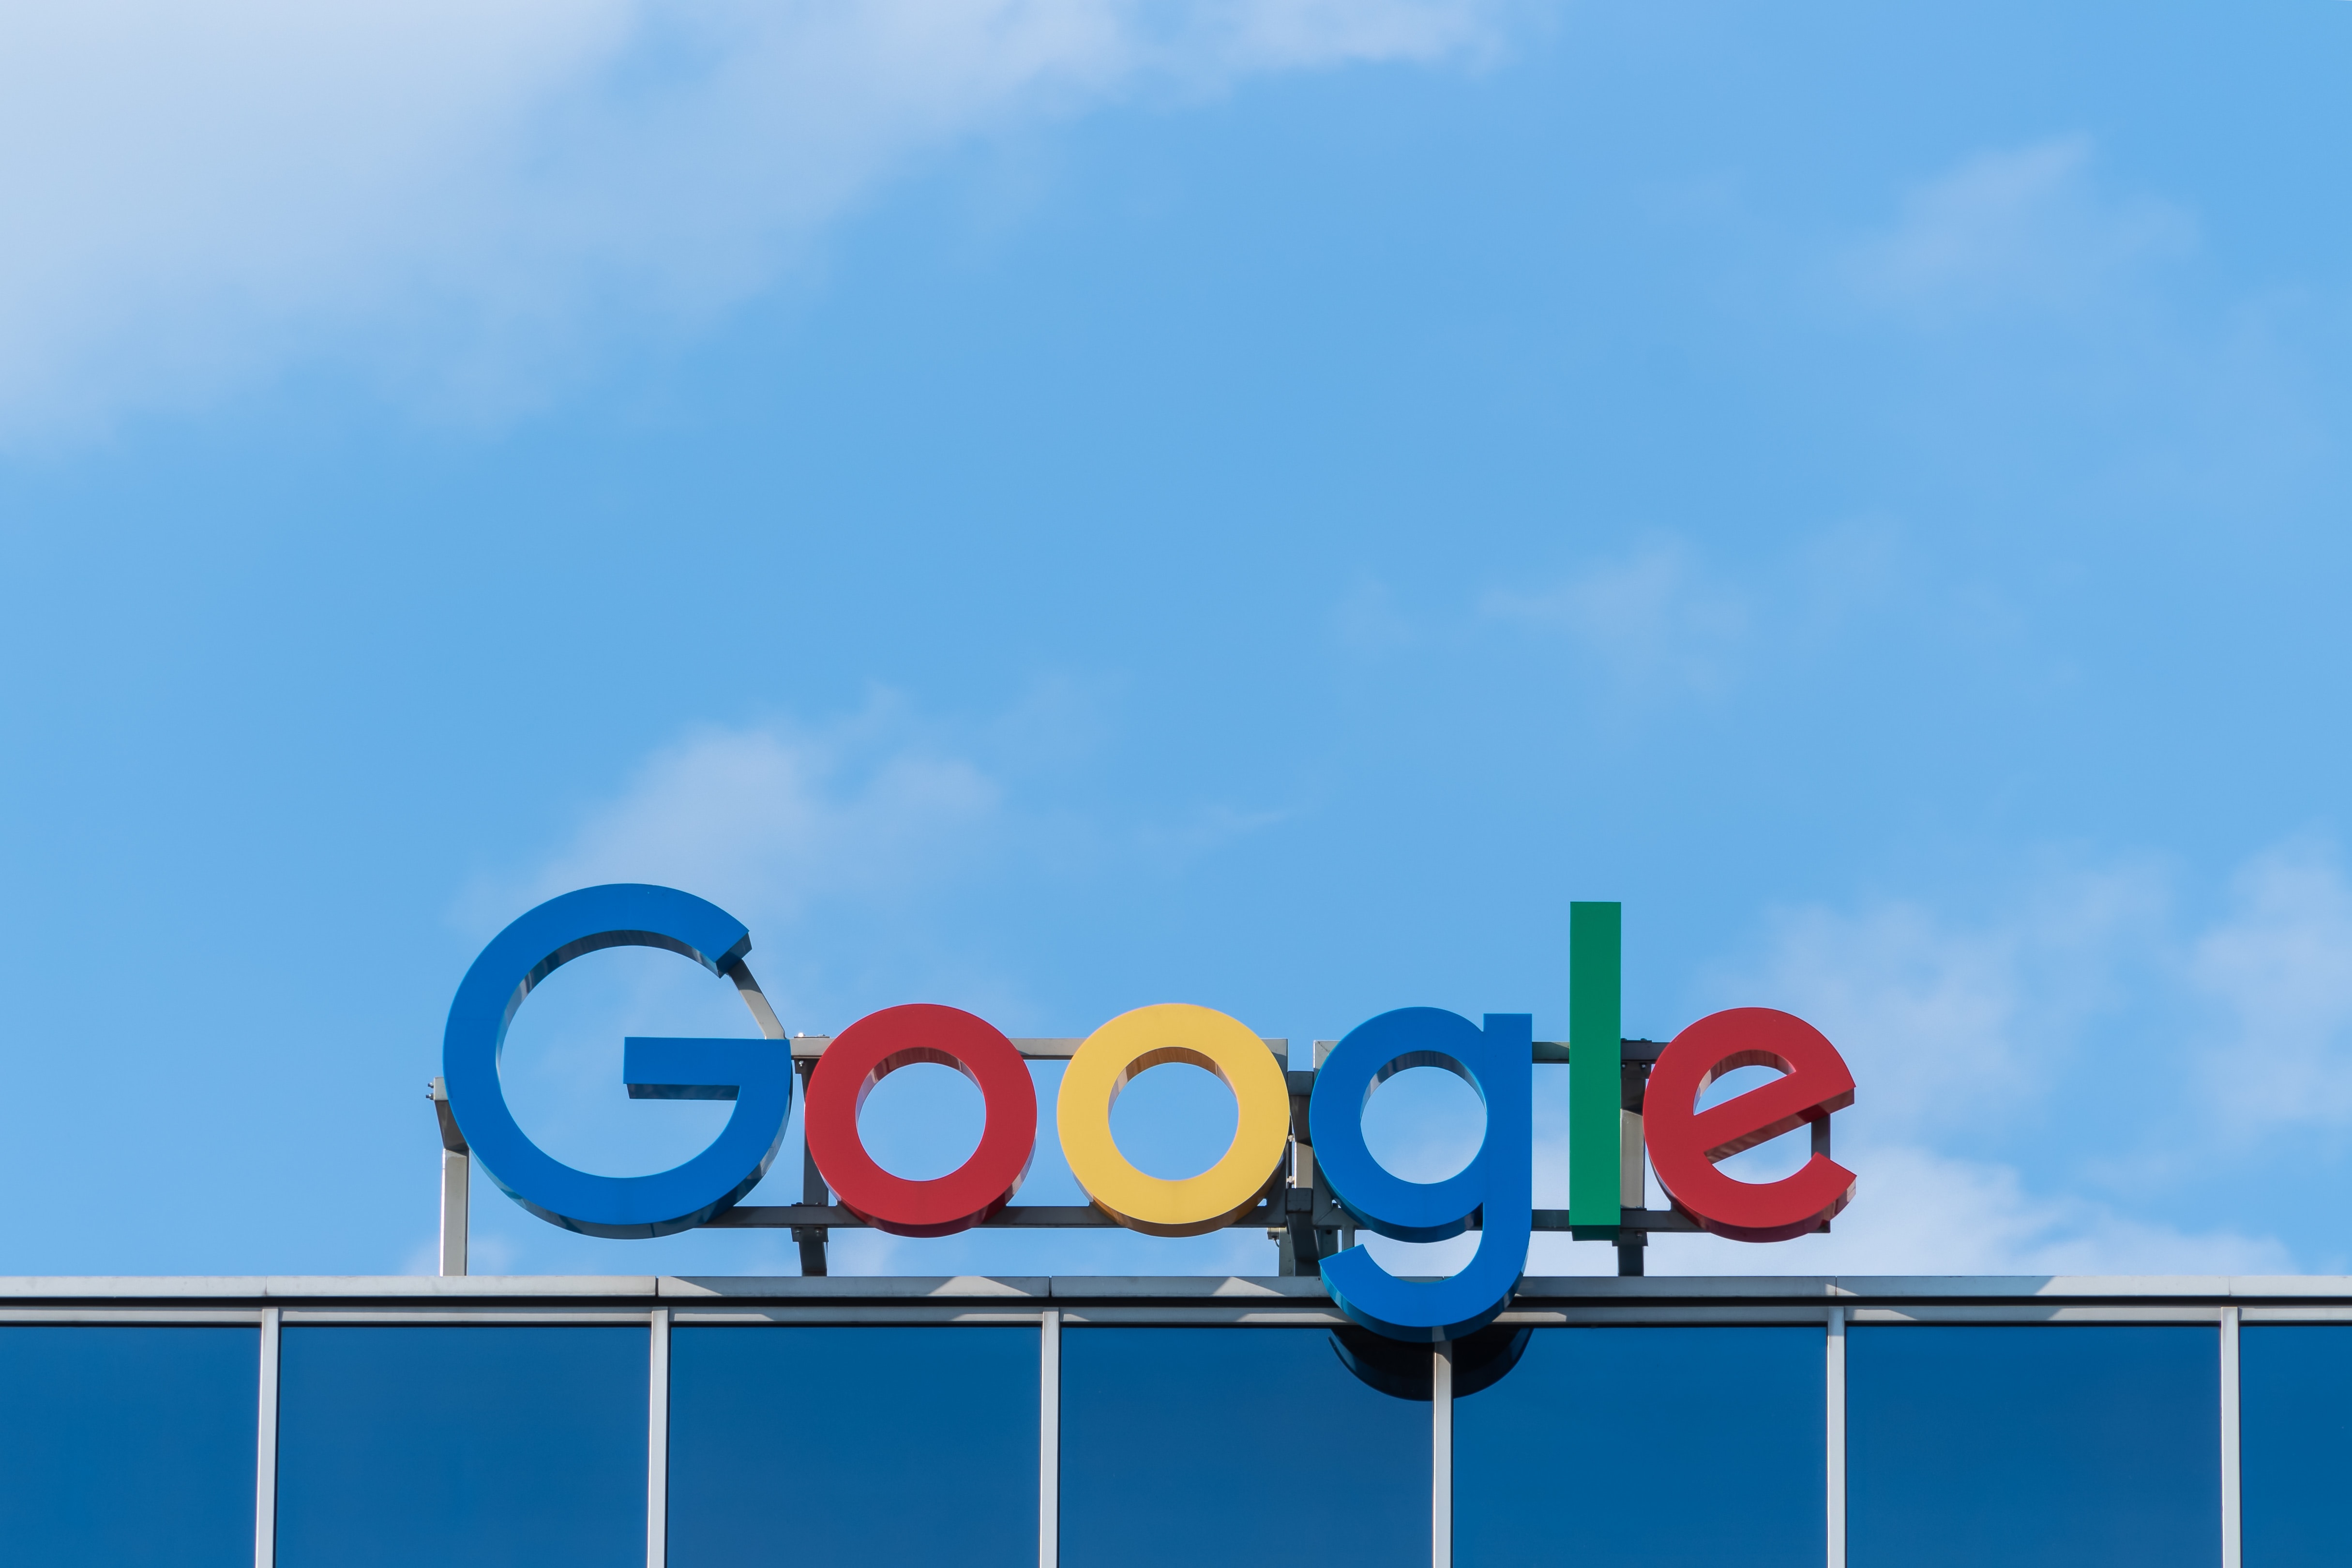 Google fête ses 25 ans : et après ? 